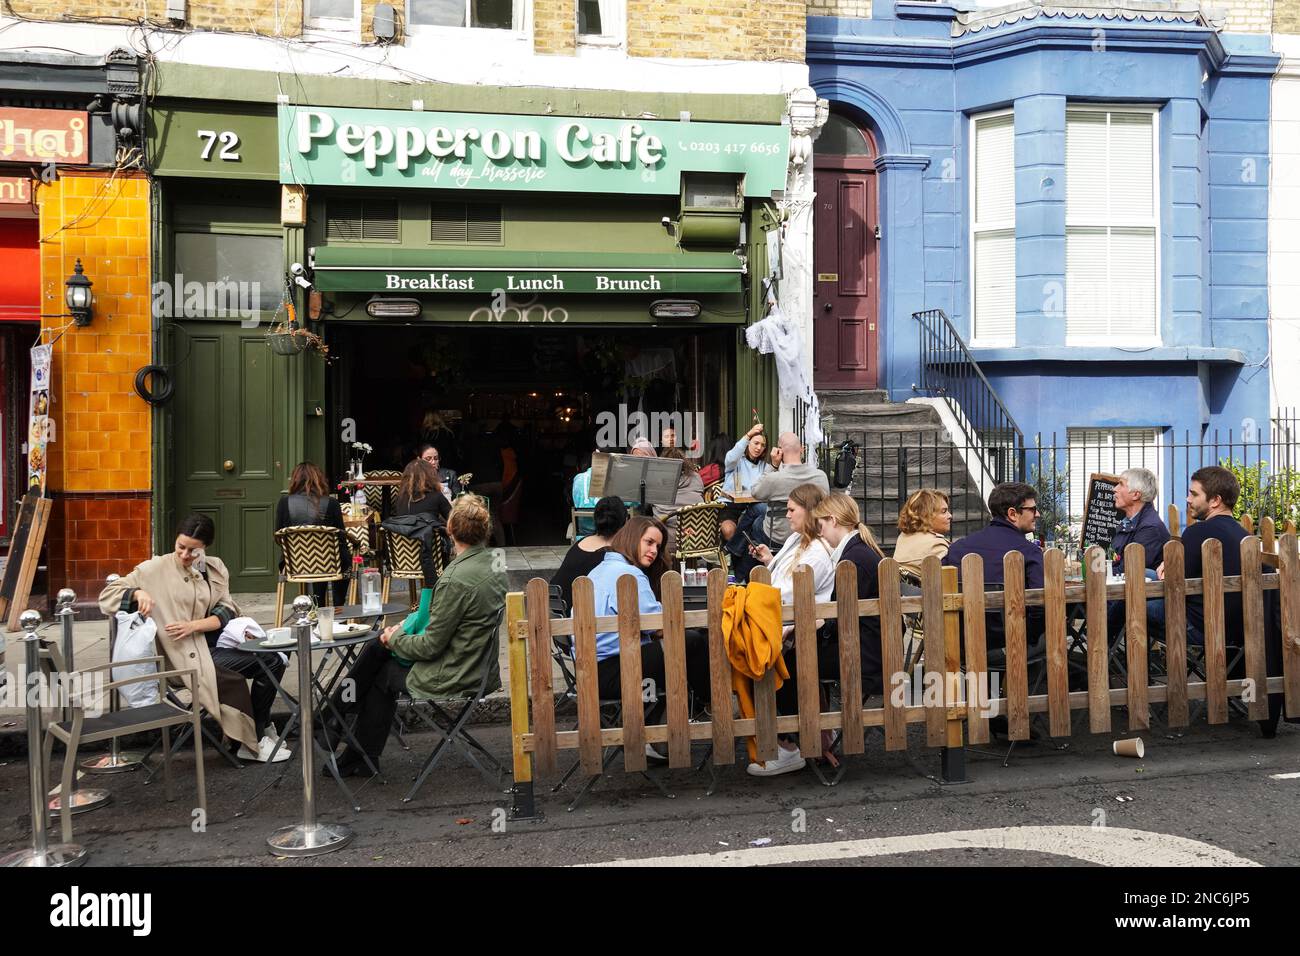 Personnes dînant à l'extérieur du restaurant à Portobello Road, Notting Hill, Londres Angleterre Royaume-Uni Banque D'Images